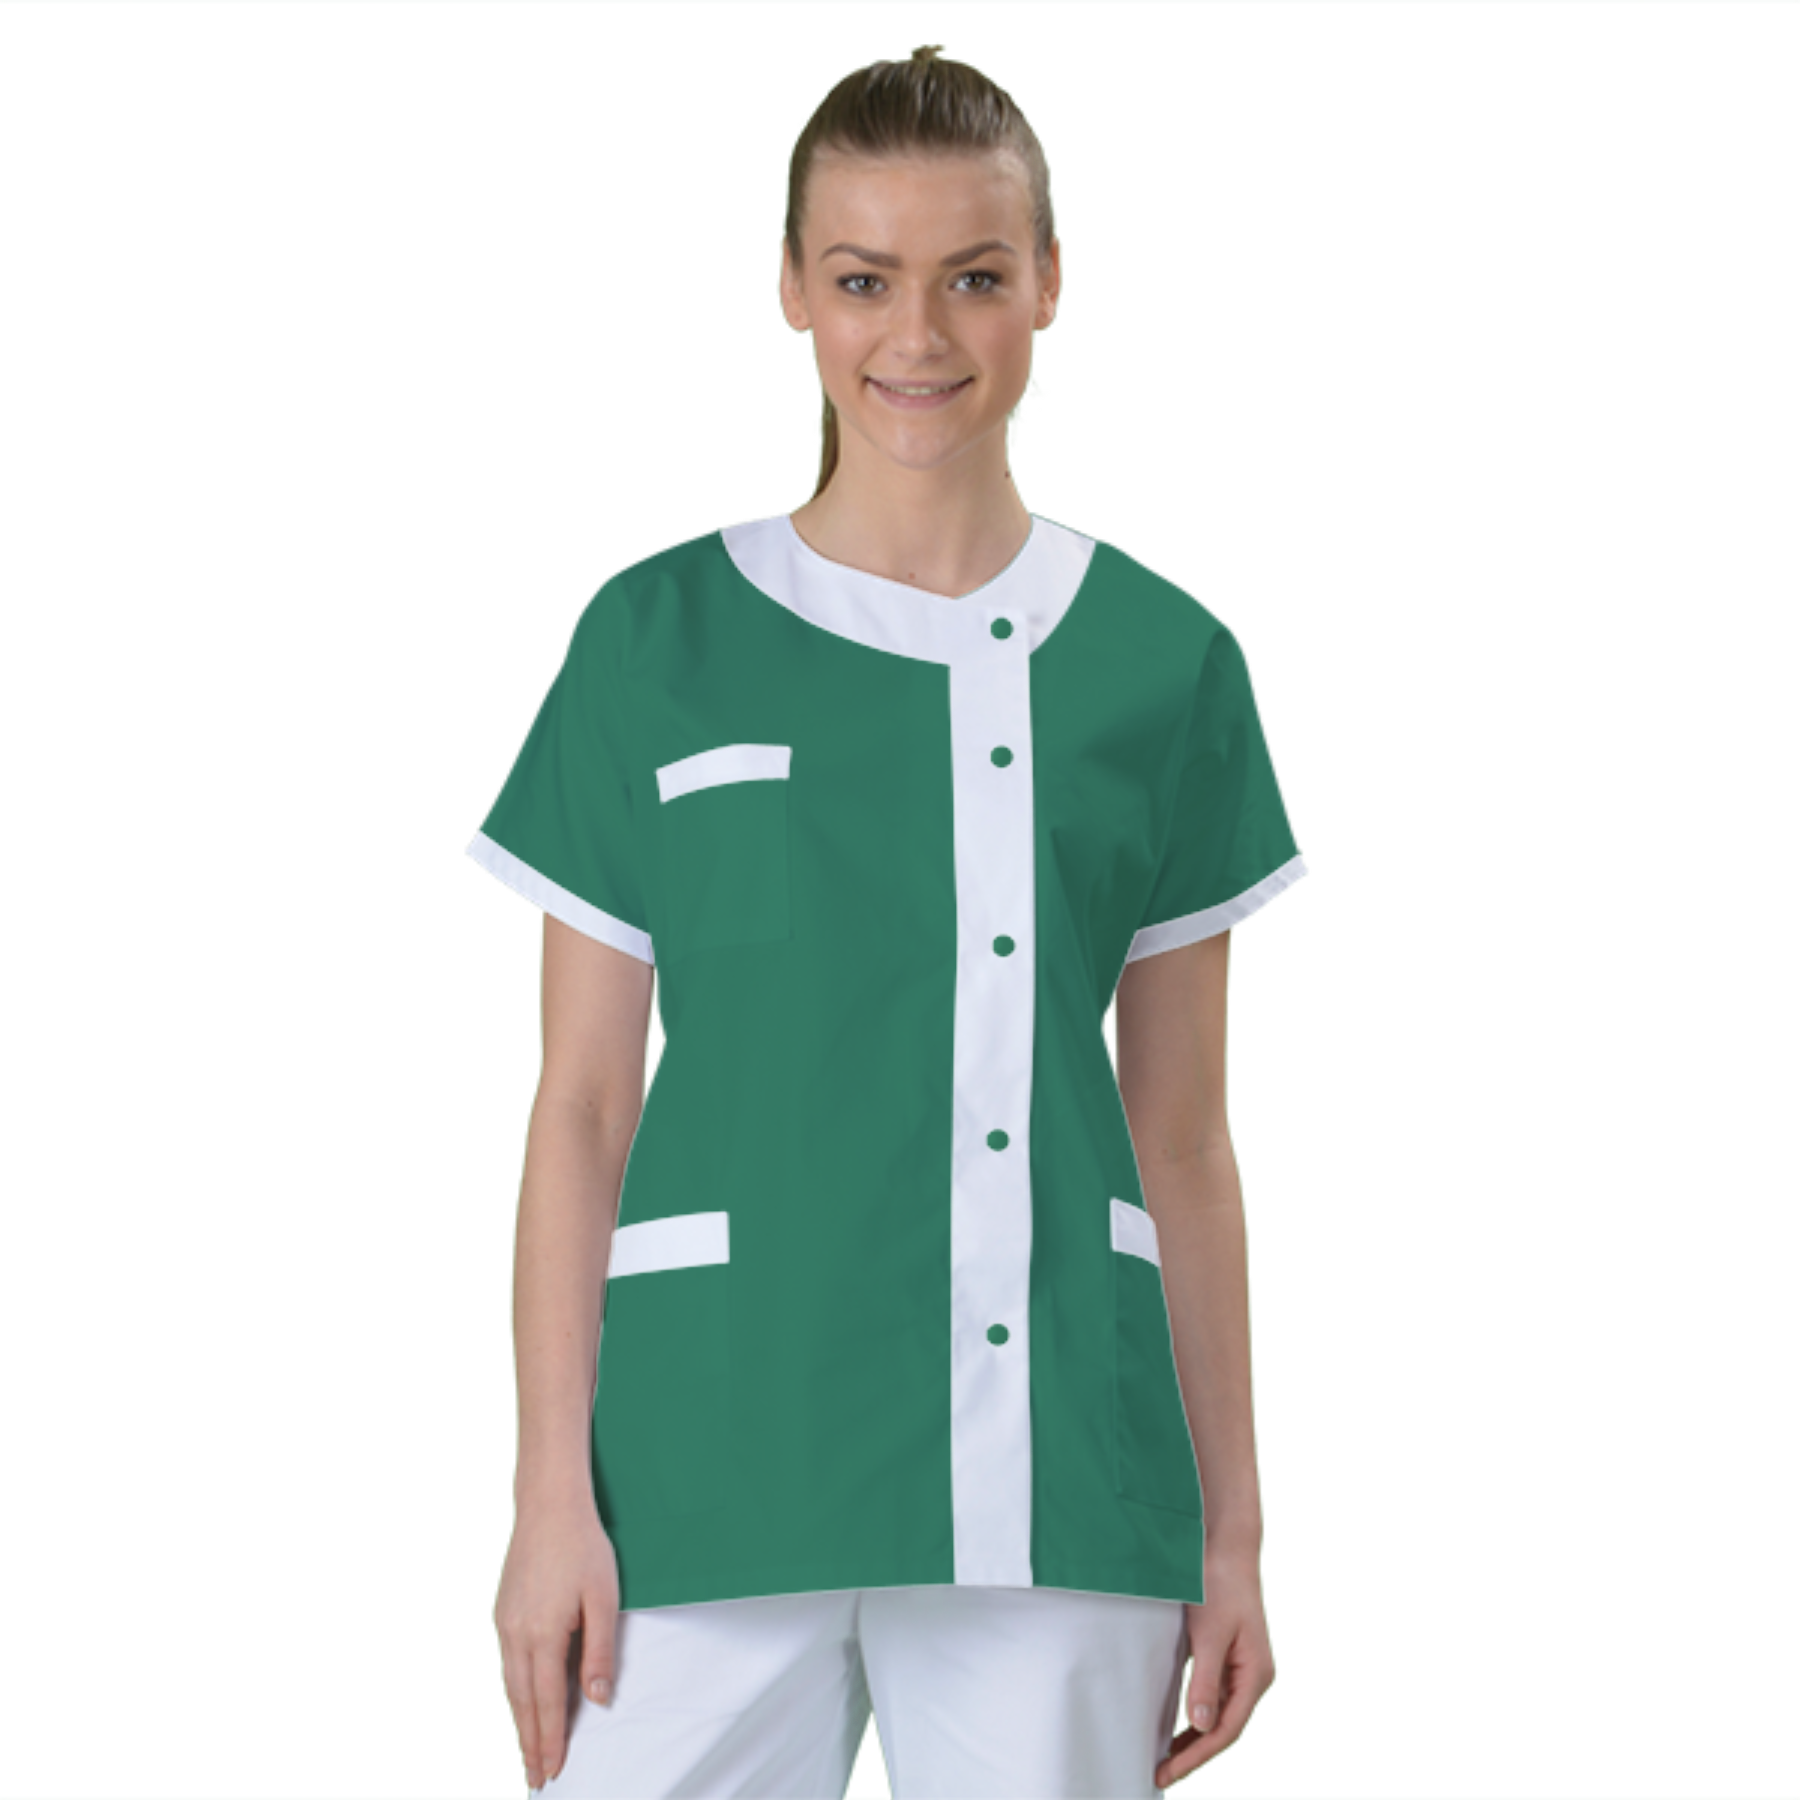 blouse-de-travail-personnalisee-tunique-medicale acheté - par Ambre - le 29-05-2020